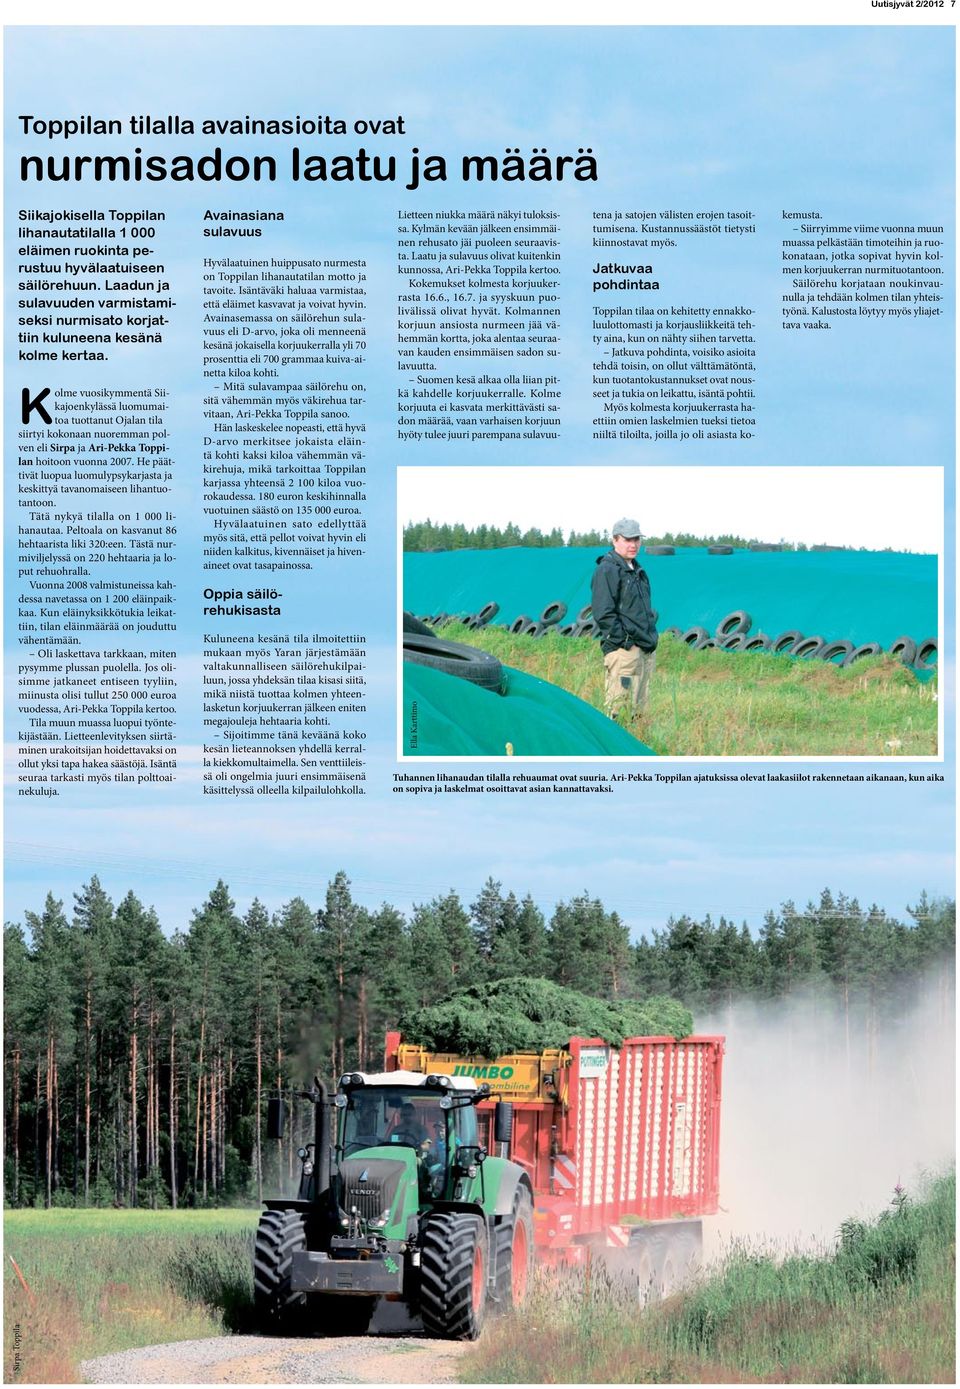 Kolme vuosikymmentä Siikajoenkylässä luomumaitoa tuottanut Ojalan tila siirtyi kokonaan nuoremman polven eli Sirpa ja Ari-Pekka Toppilan hoitoon vuonna 2007.